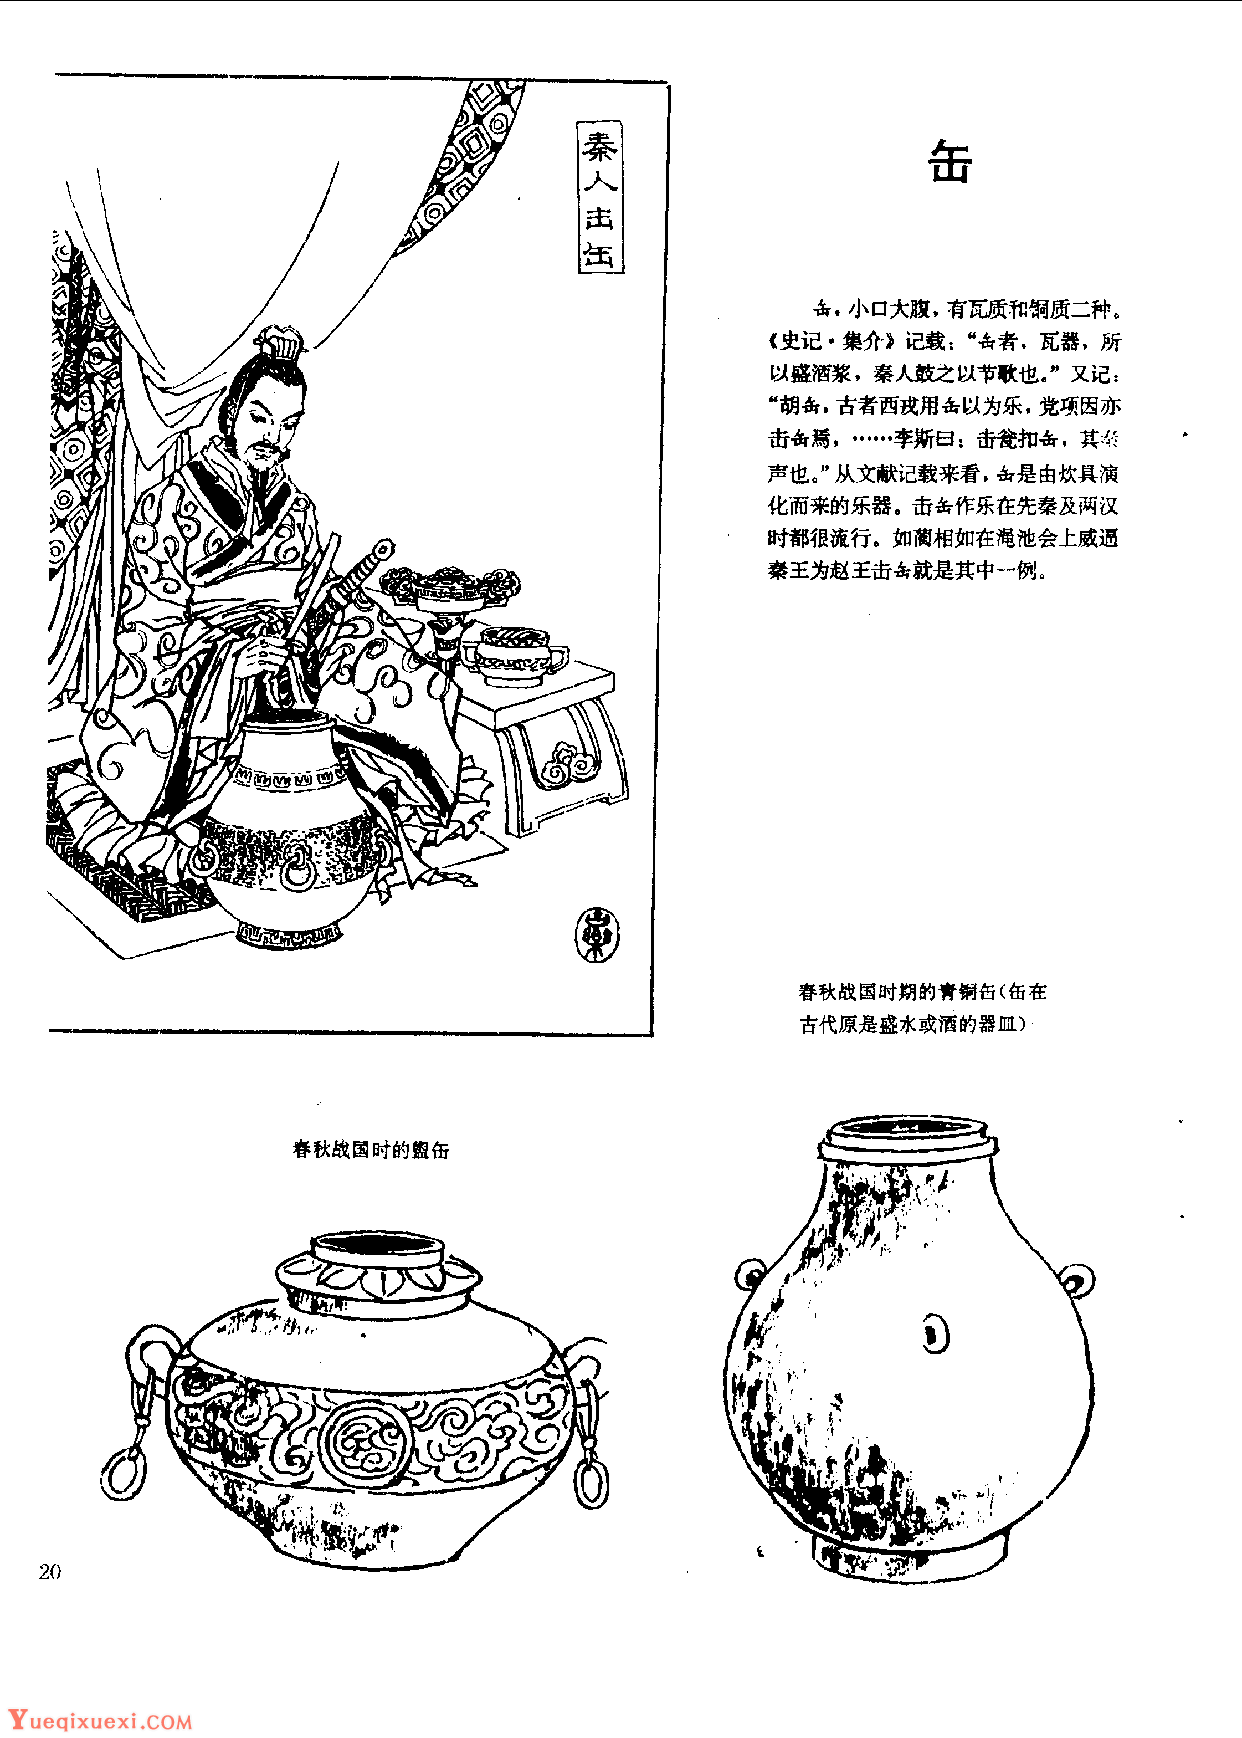 中国古代乐器《缶》